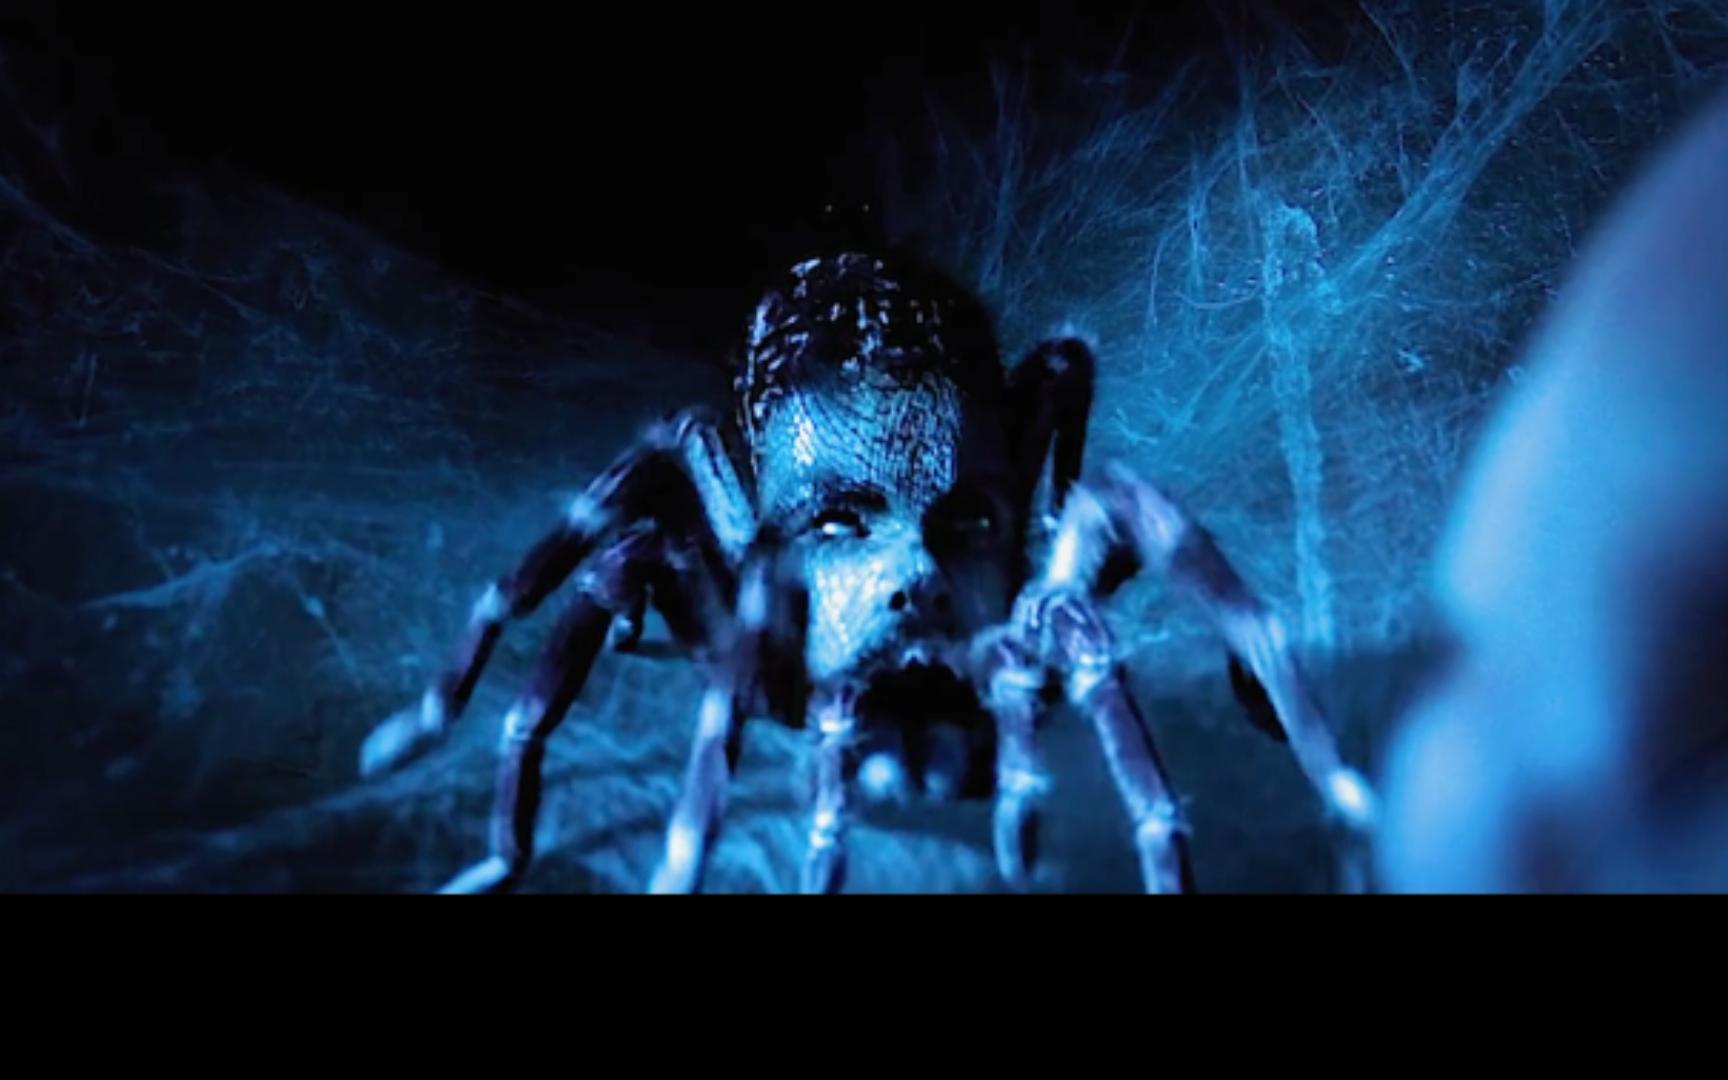 最吓人的蜘蛛怪物图片